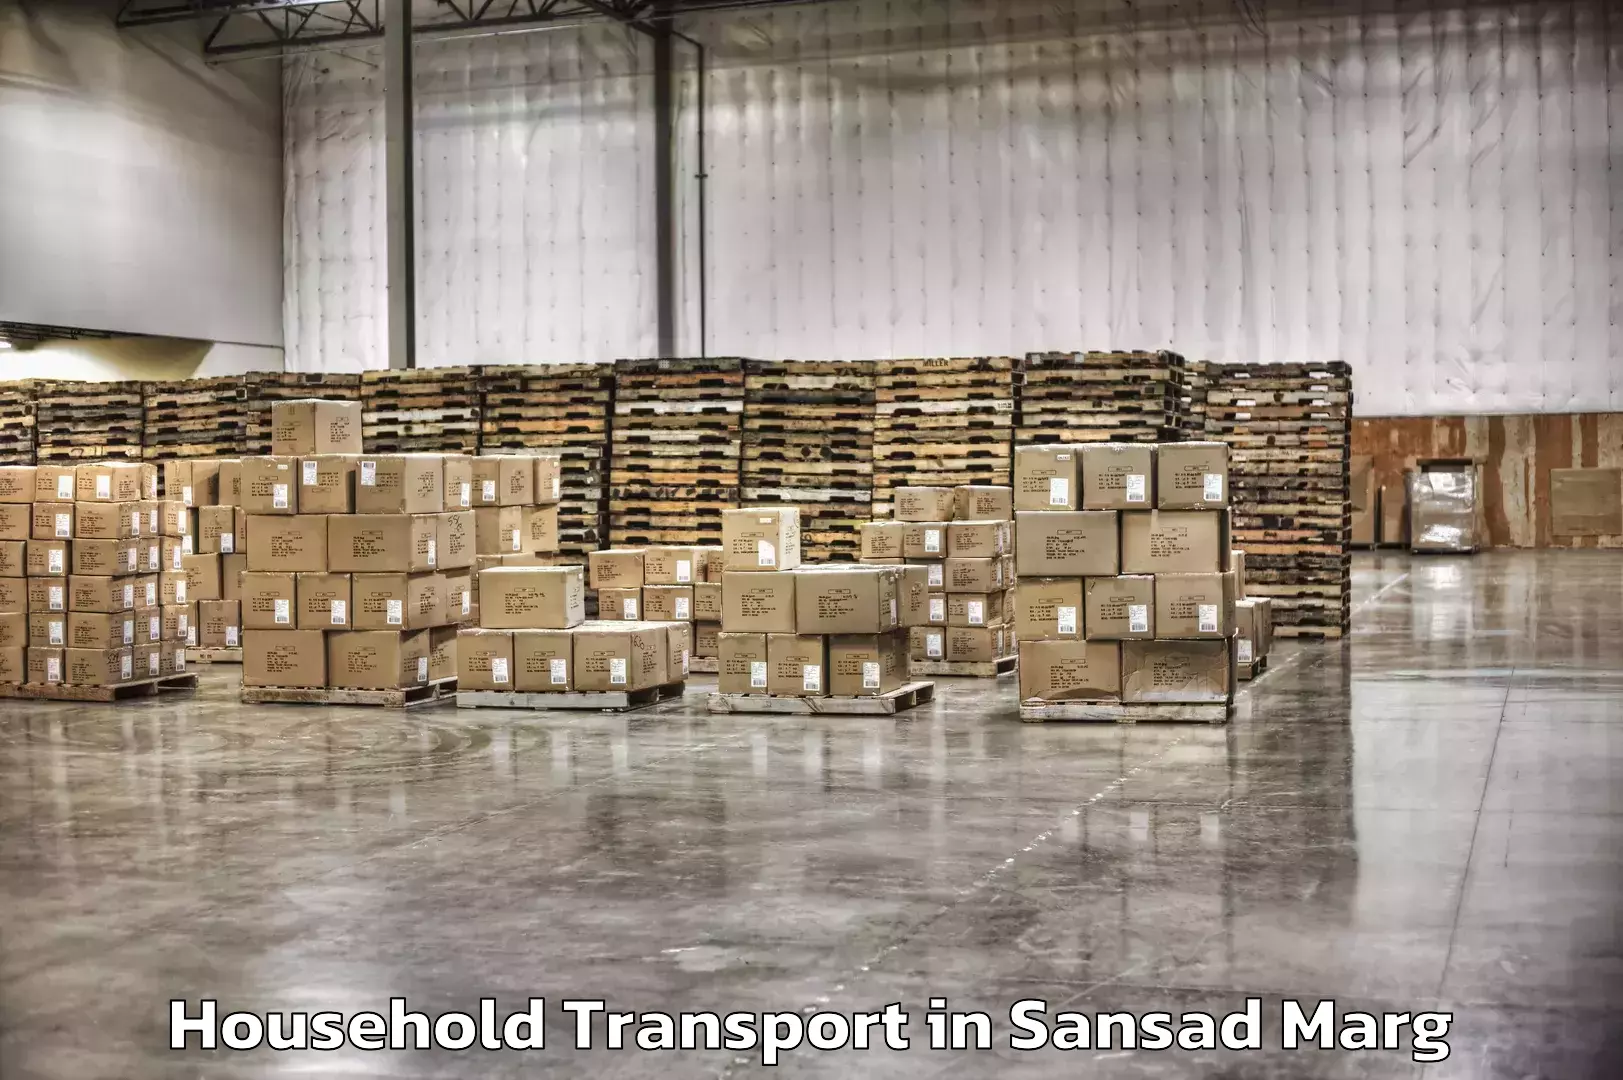 Household goods transporters in Sansad Marg